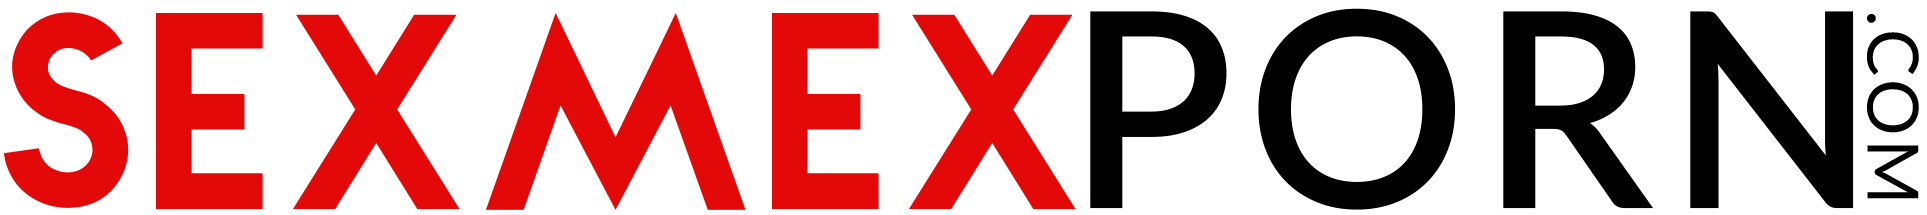 sexmex porn Pamela Rios sexmex Sex mex. Com Sexmex Sexmex.com Sexmex.xxx Www.sexmex.xxx porno sexmex